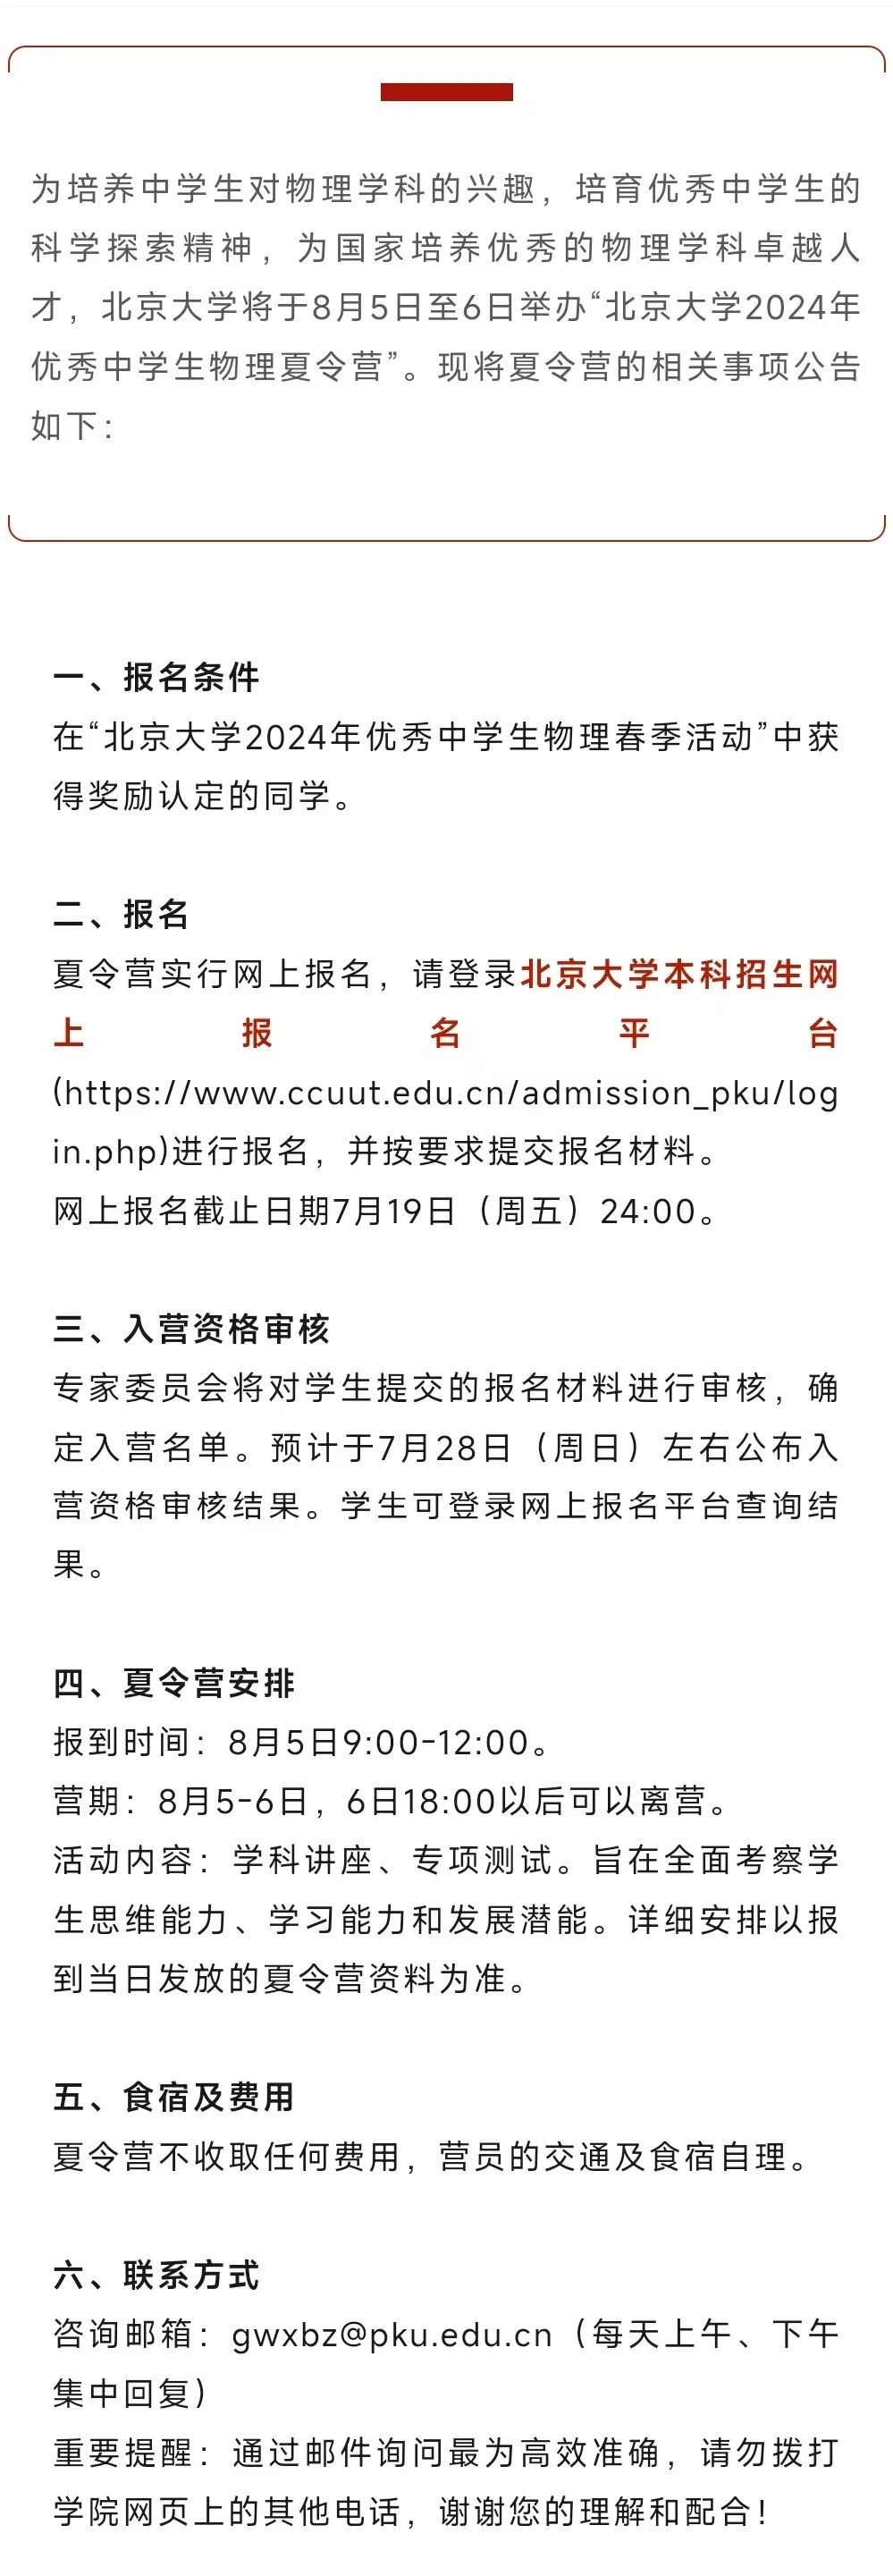 北京大学2024年优秀中学生物理夏令营报名通知发布！7月19日报名截止